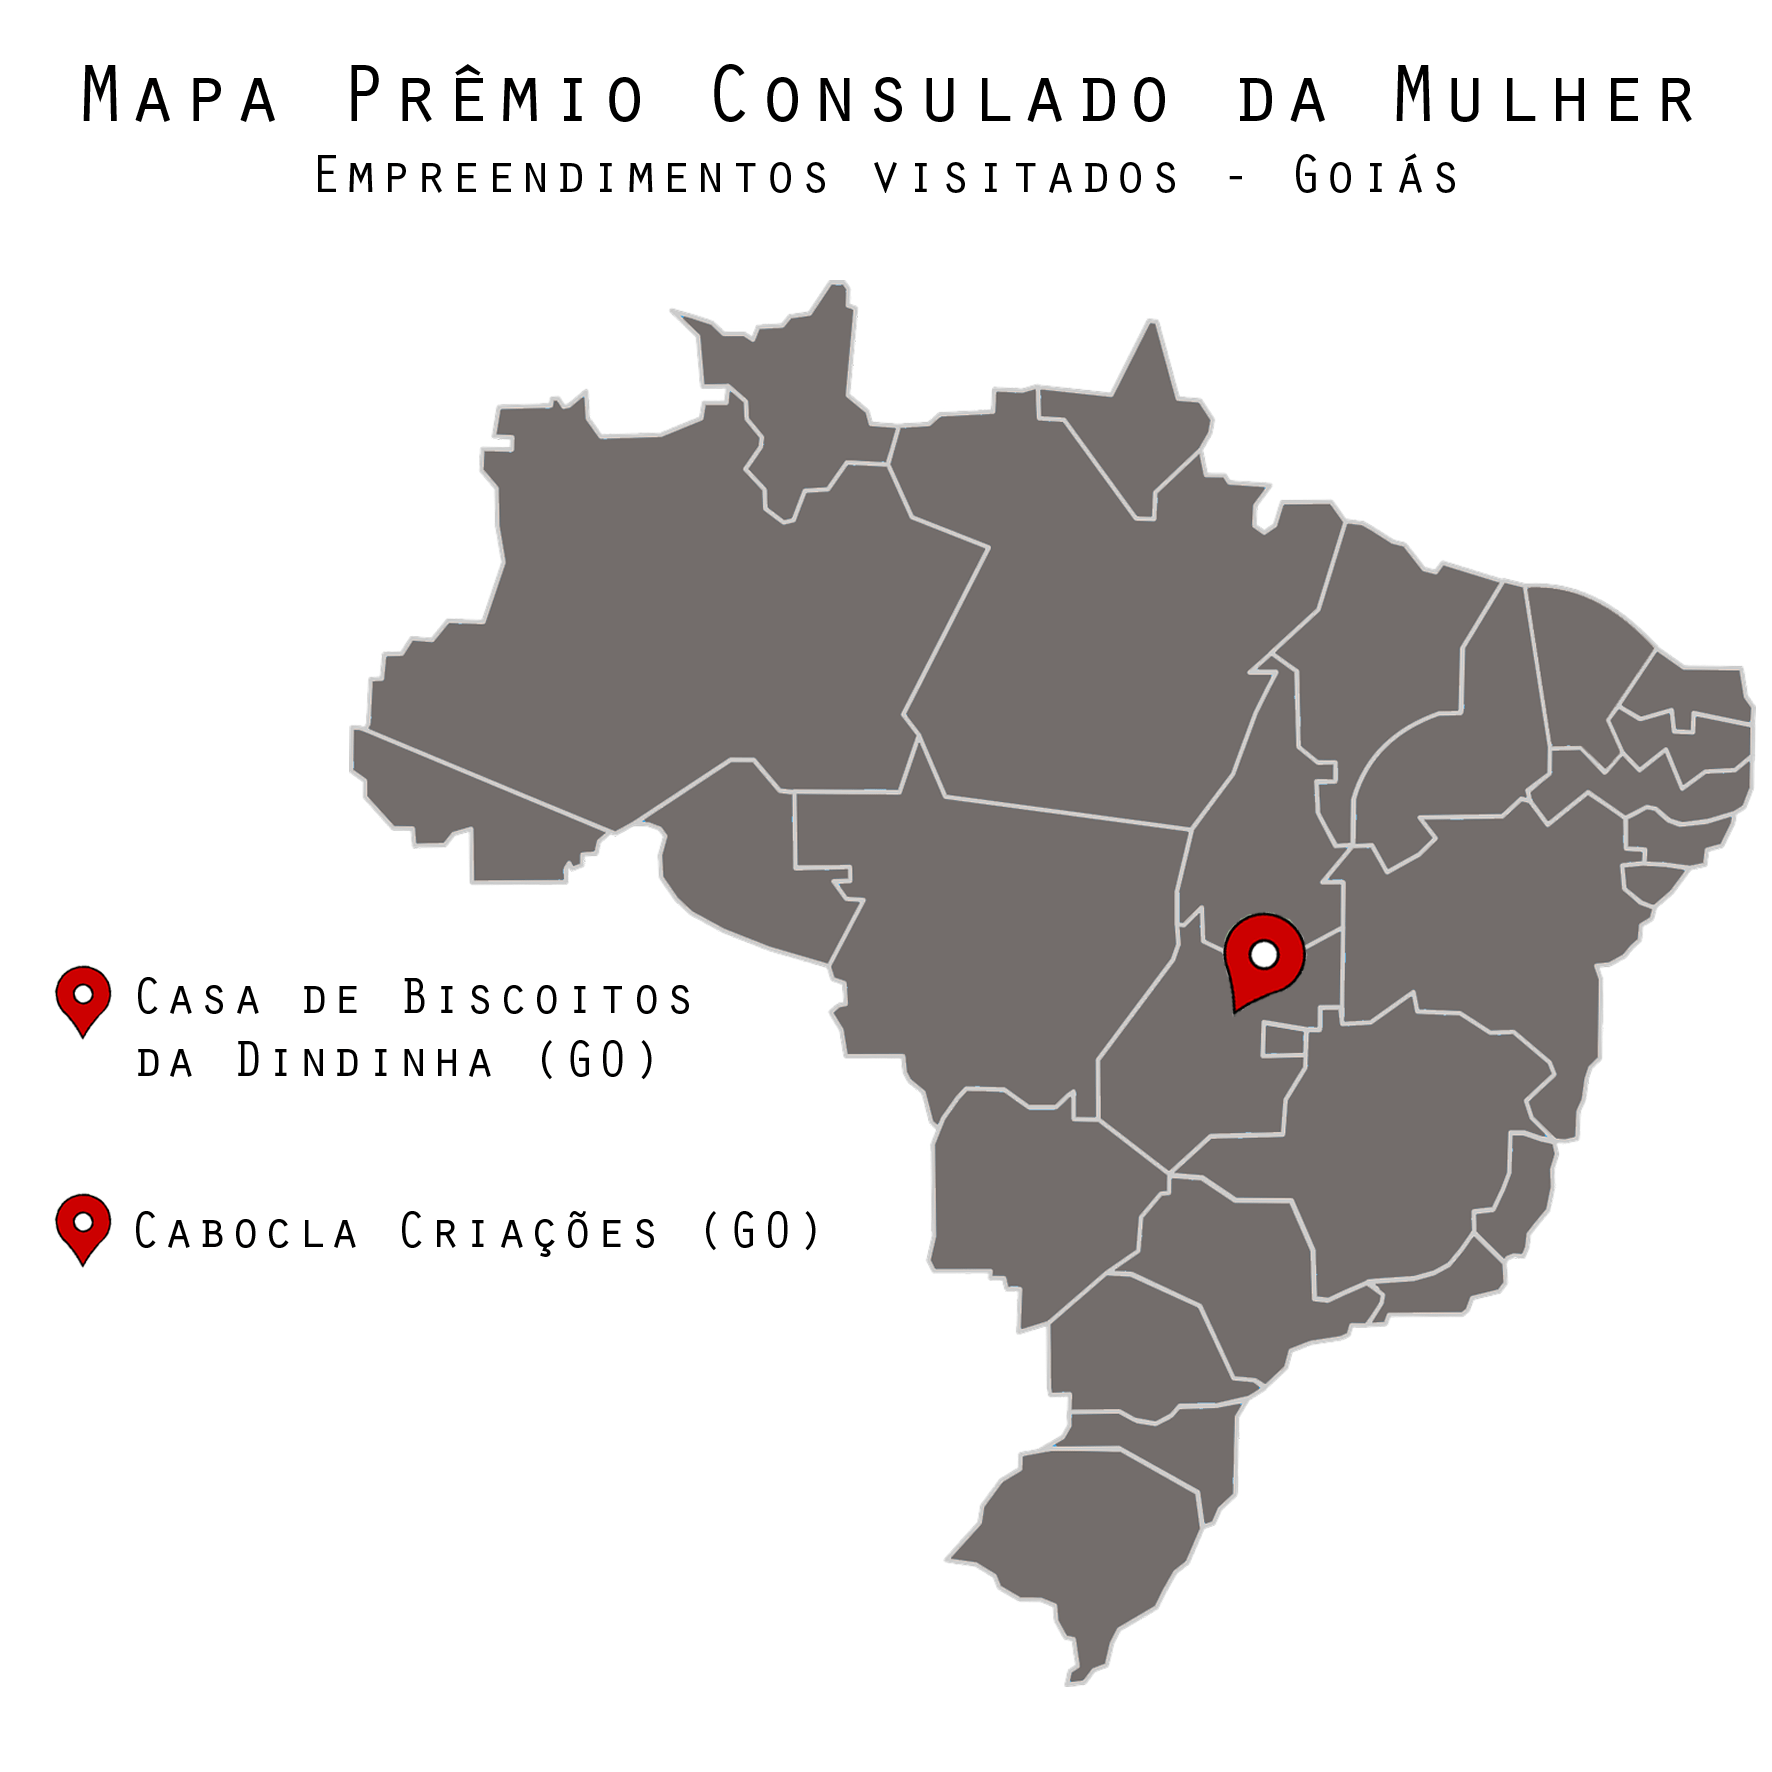 Segunda fase do Prêmio Consulado da Mulher – 8ª Parada: Goiás